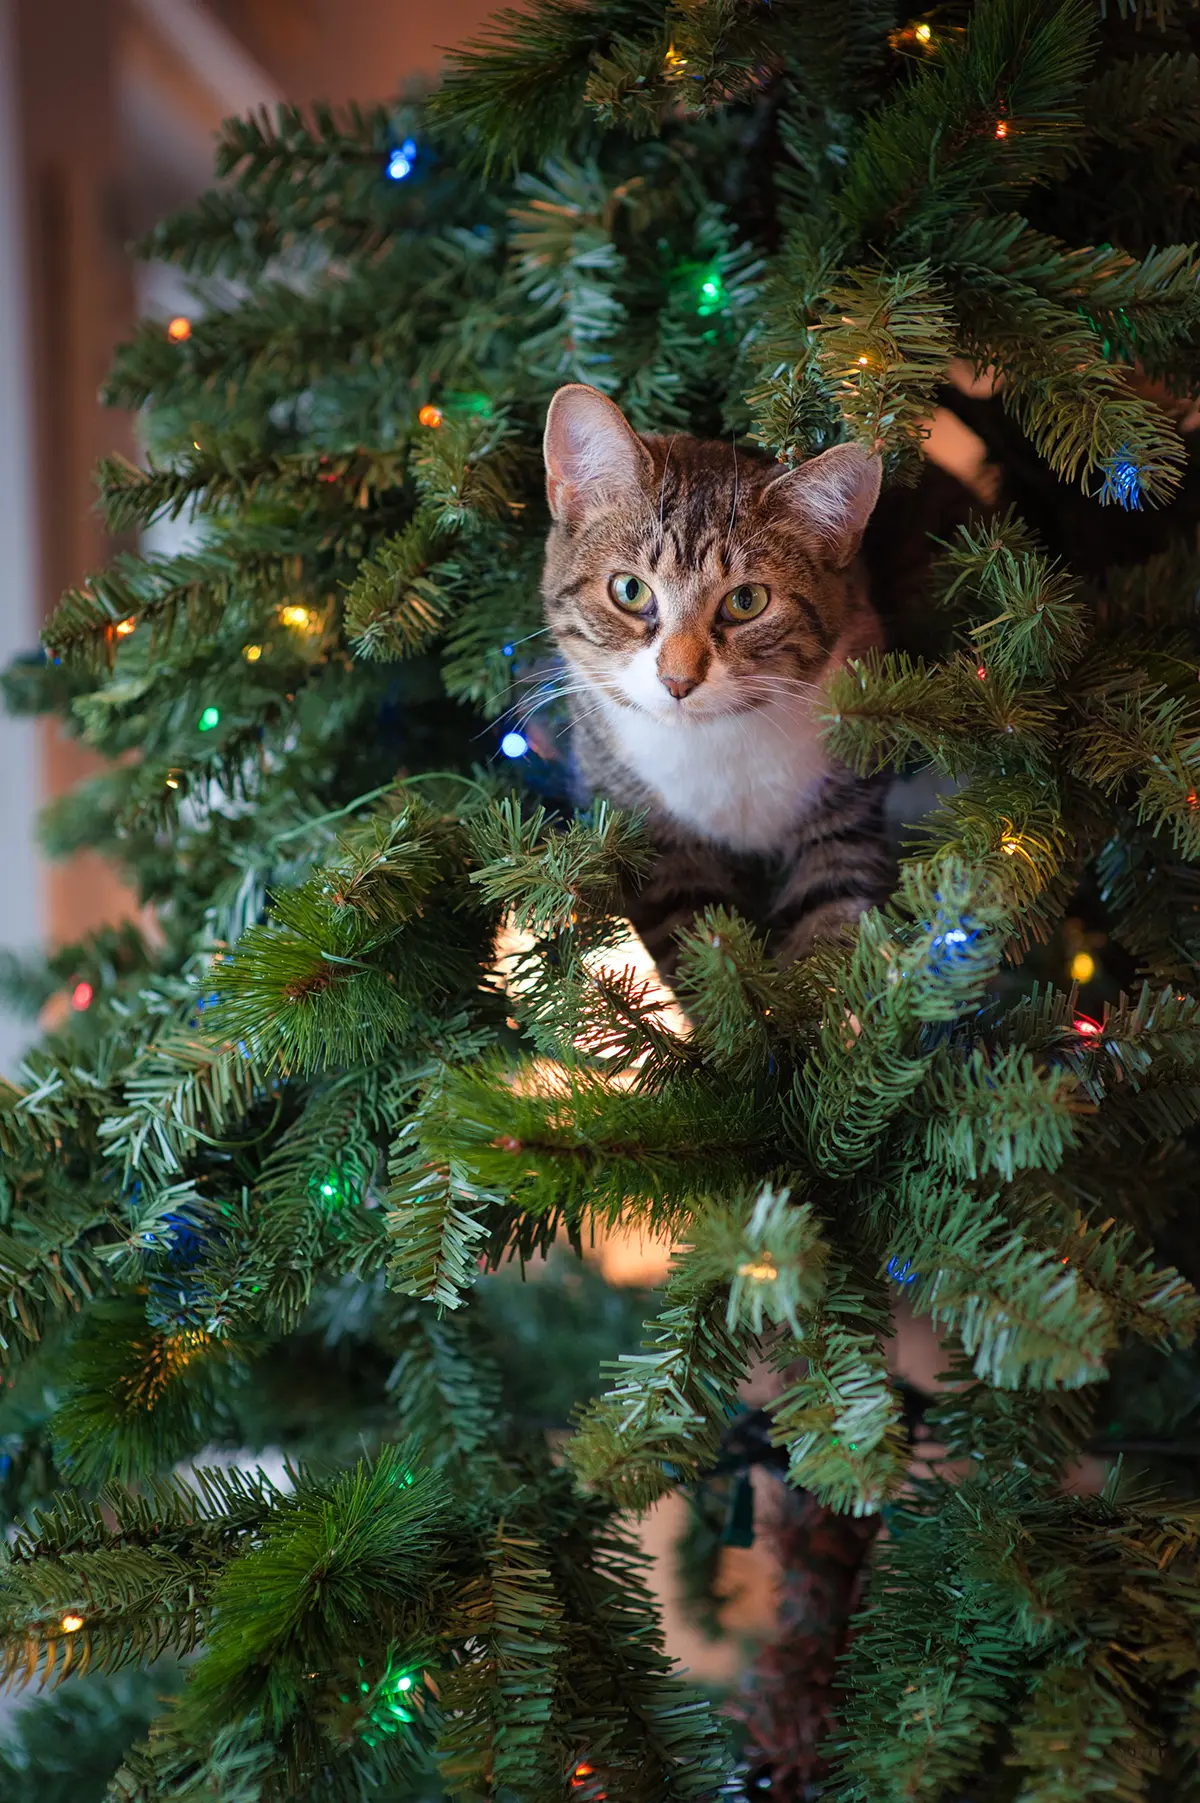 Comment éloigner le chat du sapin de Noël ?